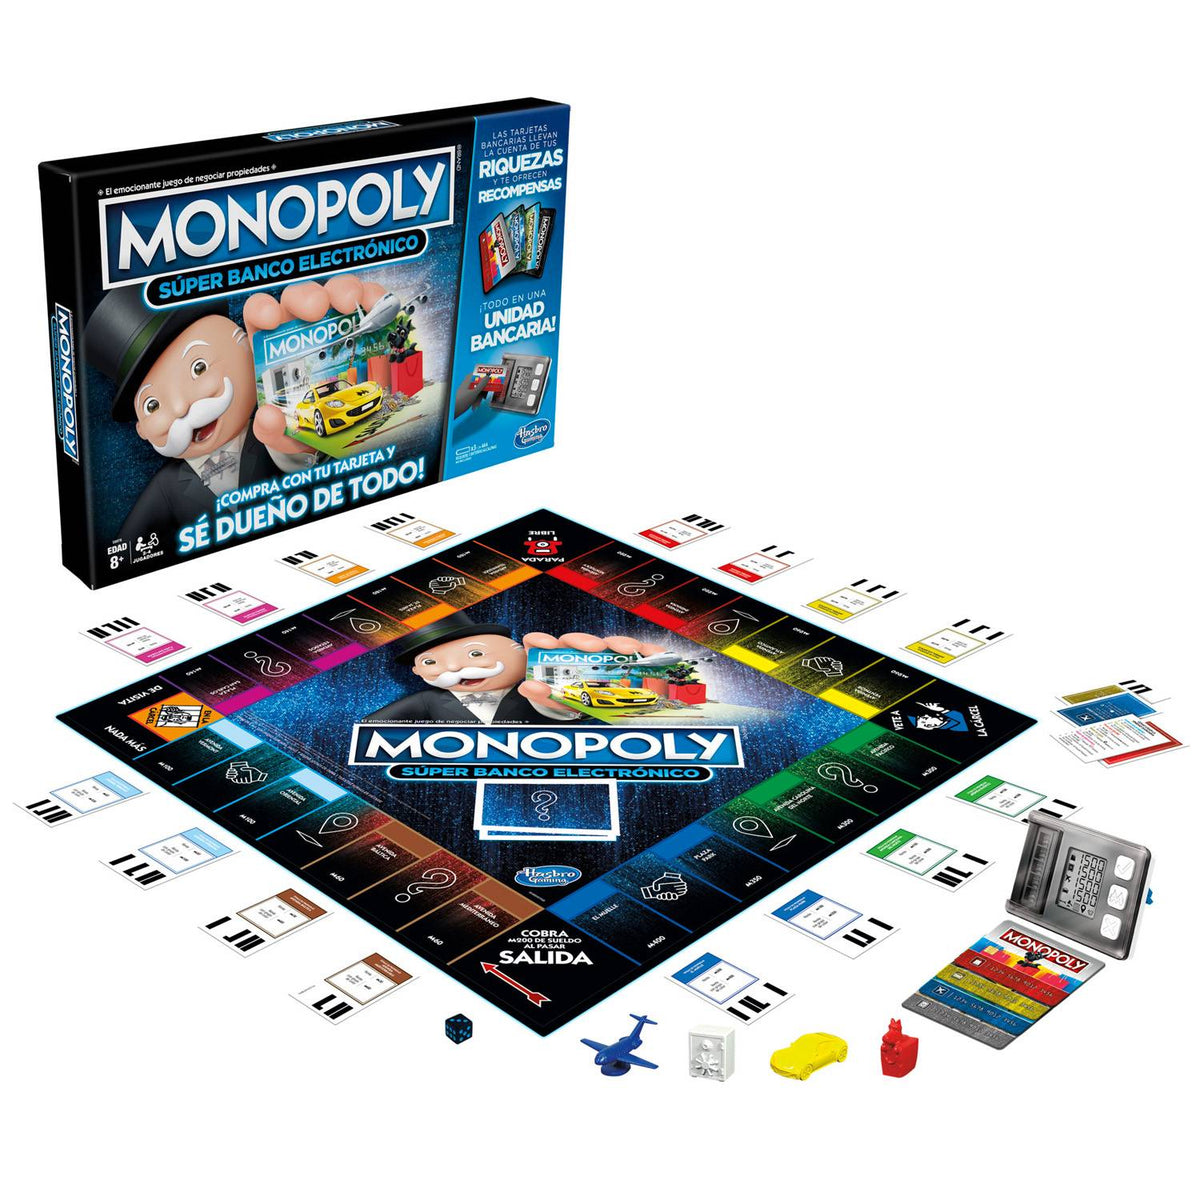 Monopoly Super Banco Electrico E8978